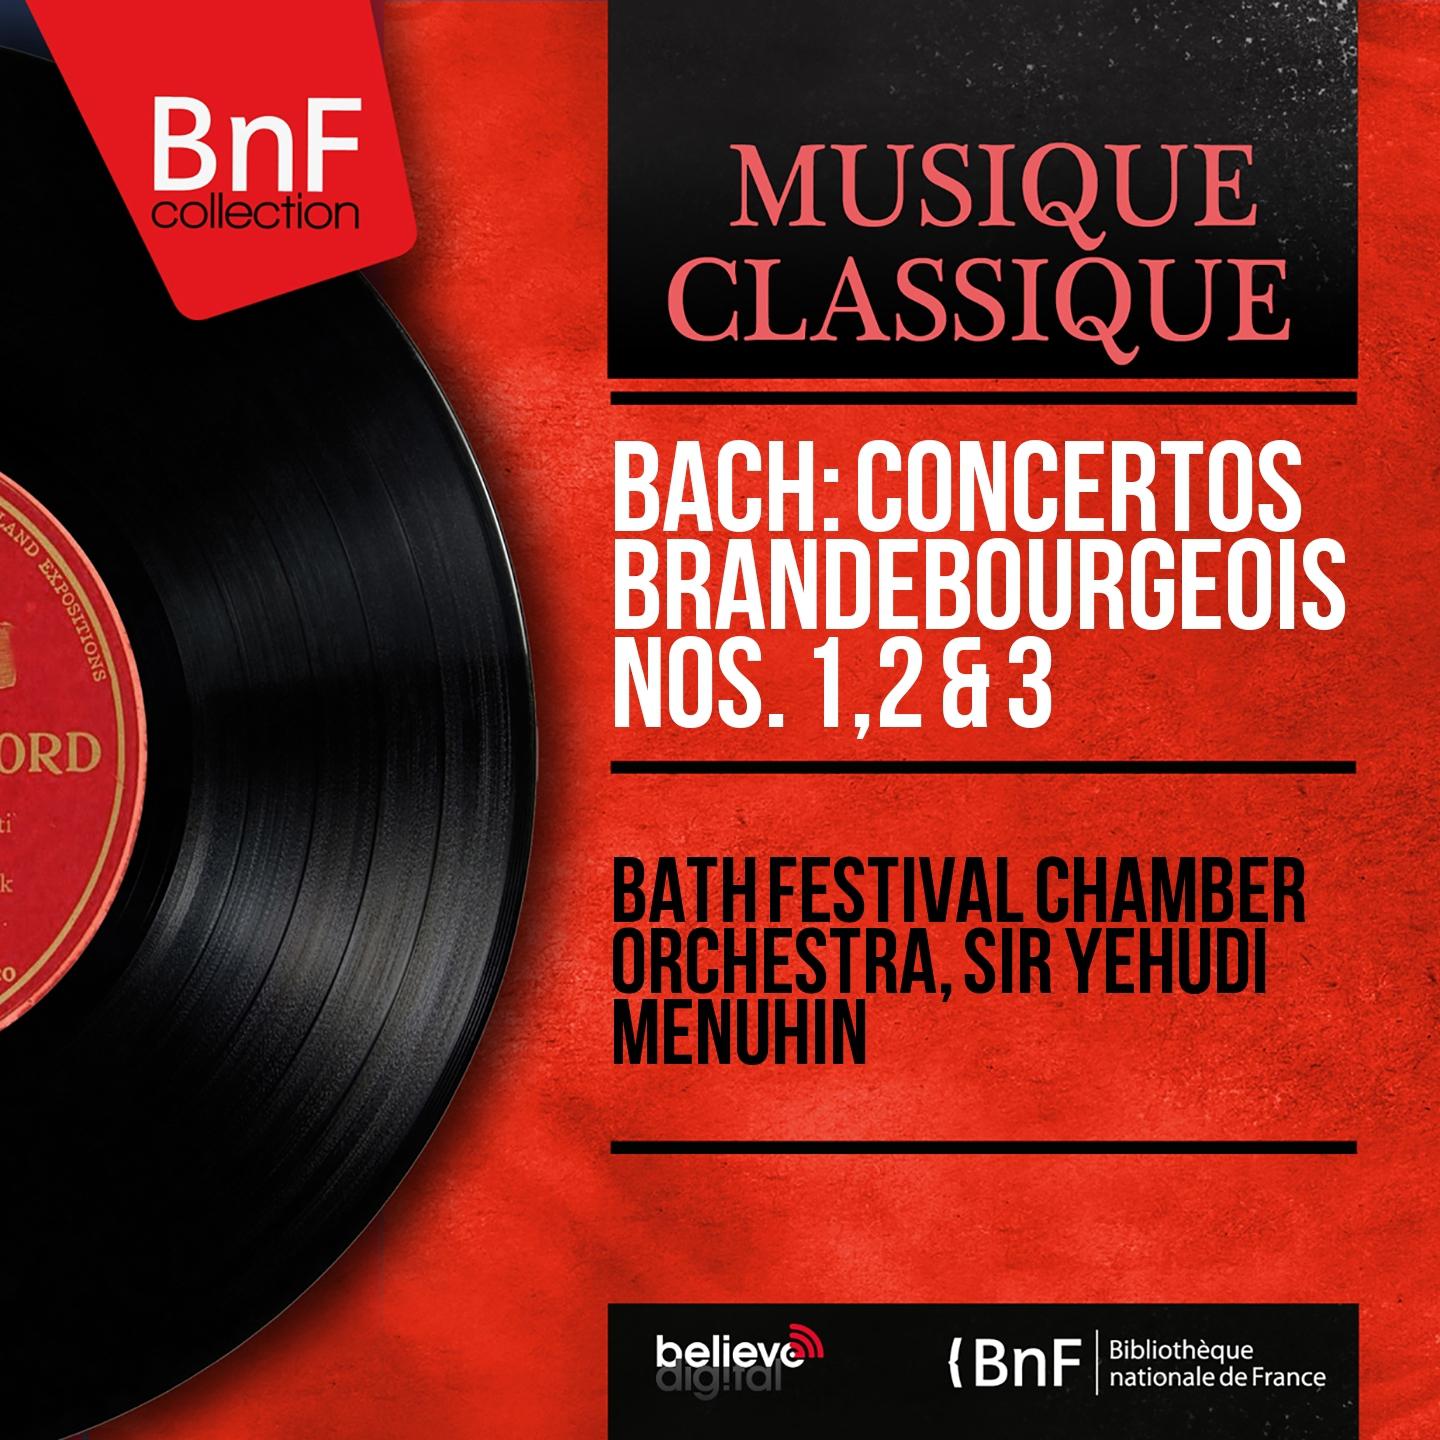 Concerto brandebourgeois No. 1 in F Major, BWV 1046: IV. Menuet - Trio I - Menuet